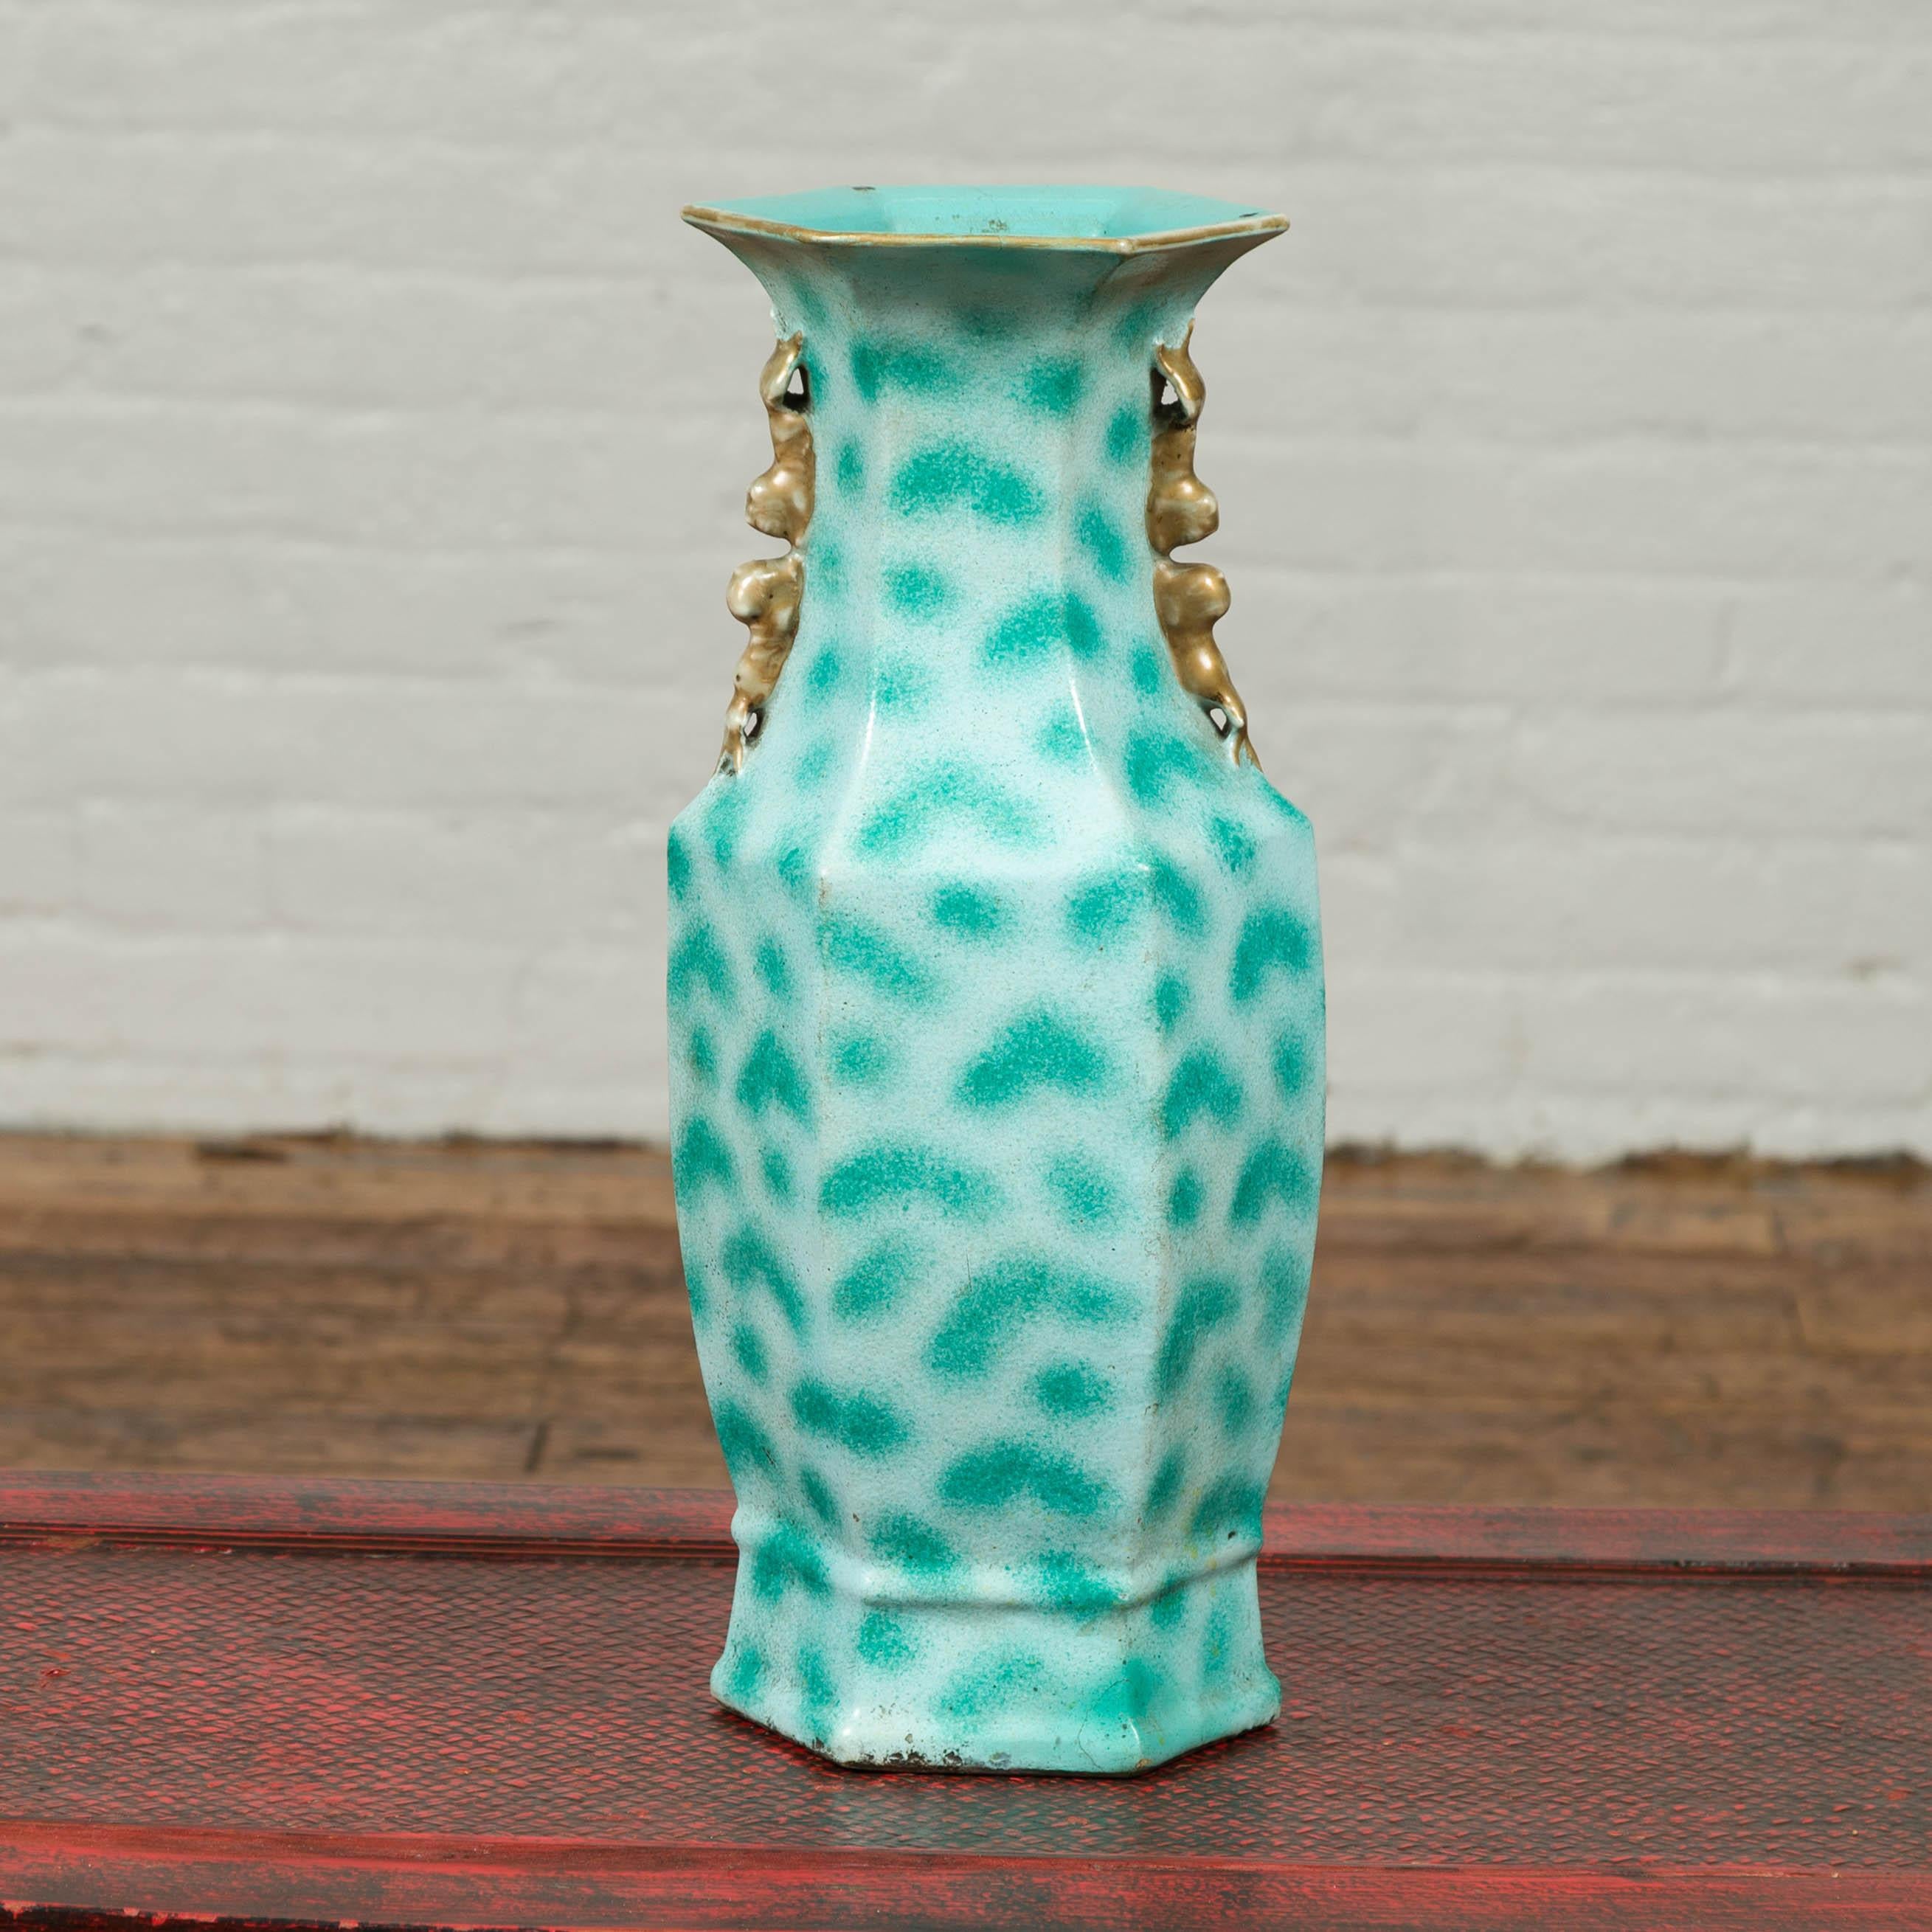 Eine türkisfarbene Vintage-Vase aus China aus der Mitte des 20. Jahrhunderts mit gepunktetem Muster und winzigen Henkeln. Diese Vase, die Mitte des 20. Jahrhunderts in China entstand, zieht mit ihrer türkisfarbenen Farbe und den gepunkteten Motiven